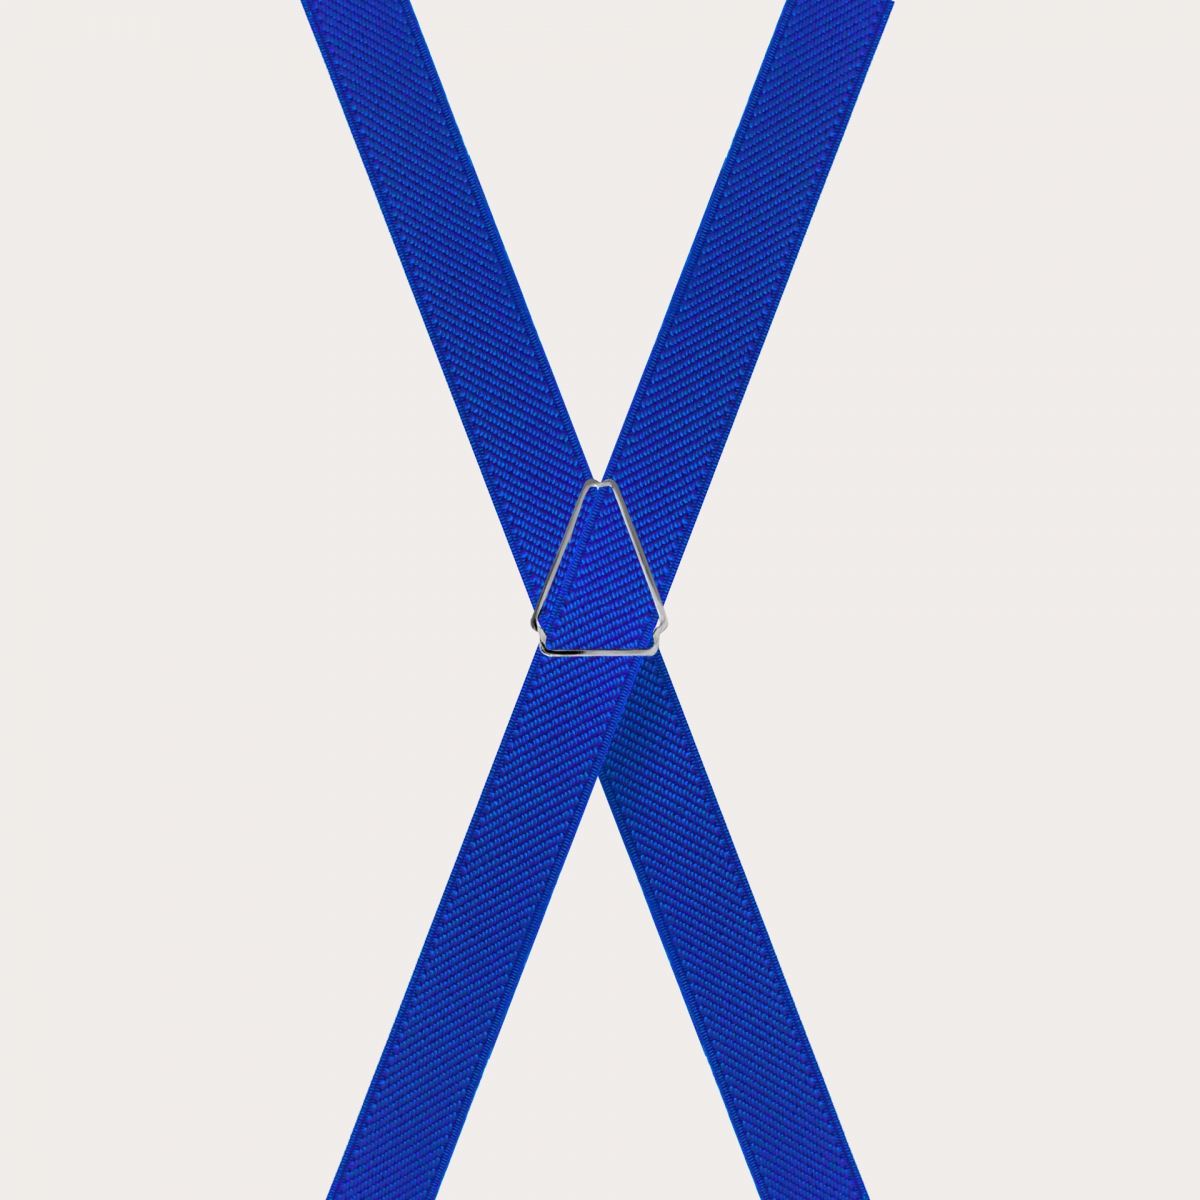 Bretelles fines unisexes en X, bleu royal